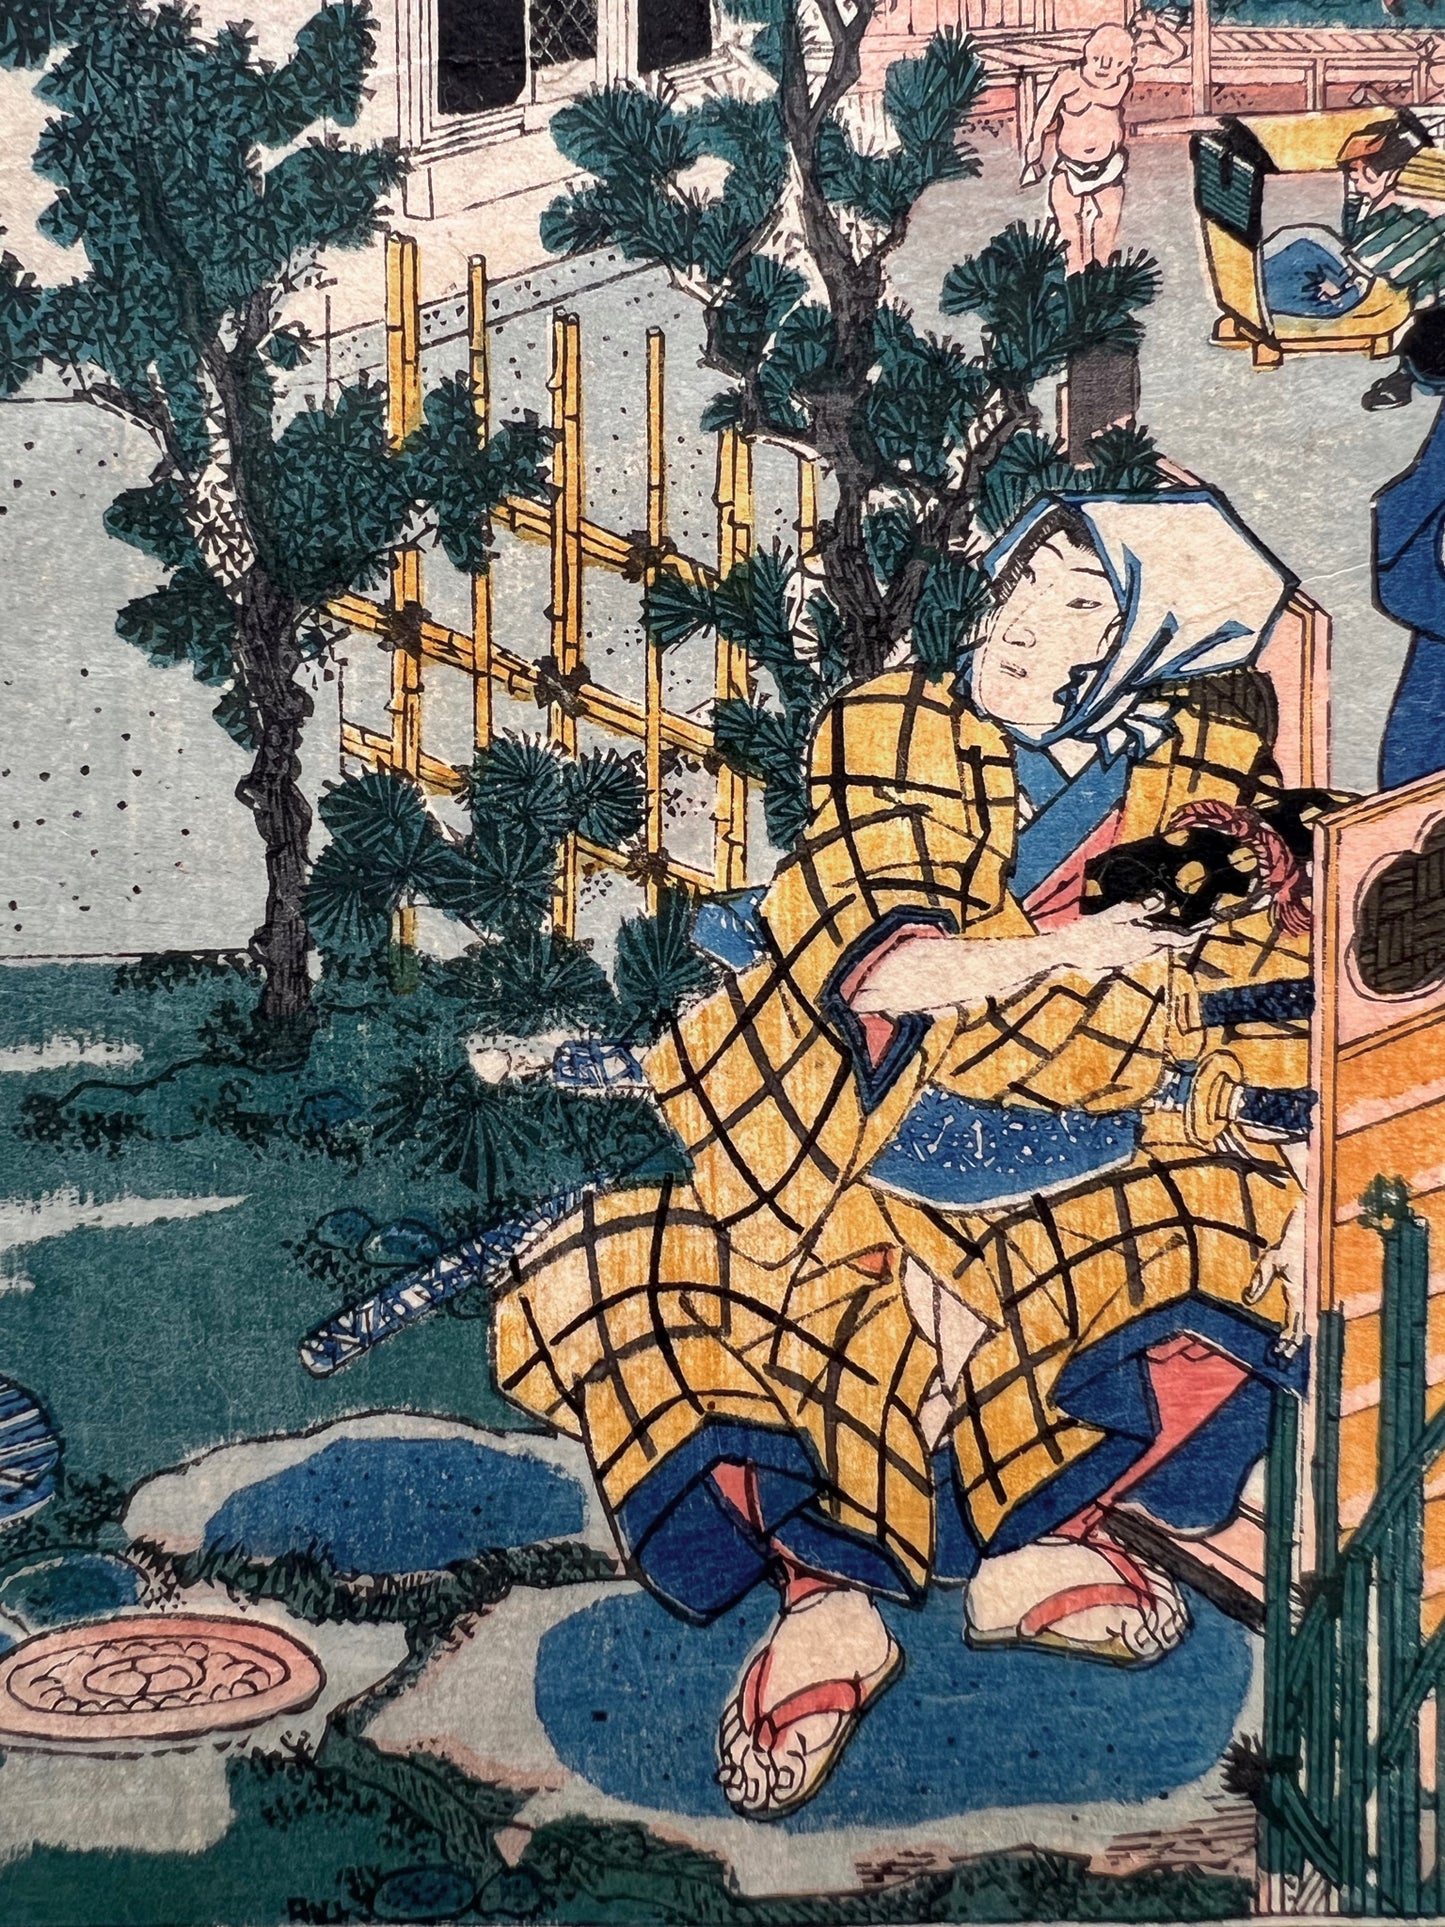 estampe japonaise rencontre discrete de samourai ronin dans la cour intérieure d'une maison de thé, homme accroupi un paquet à la main